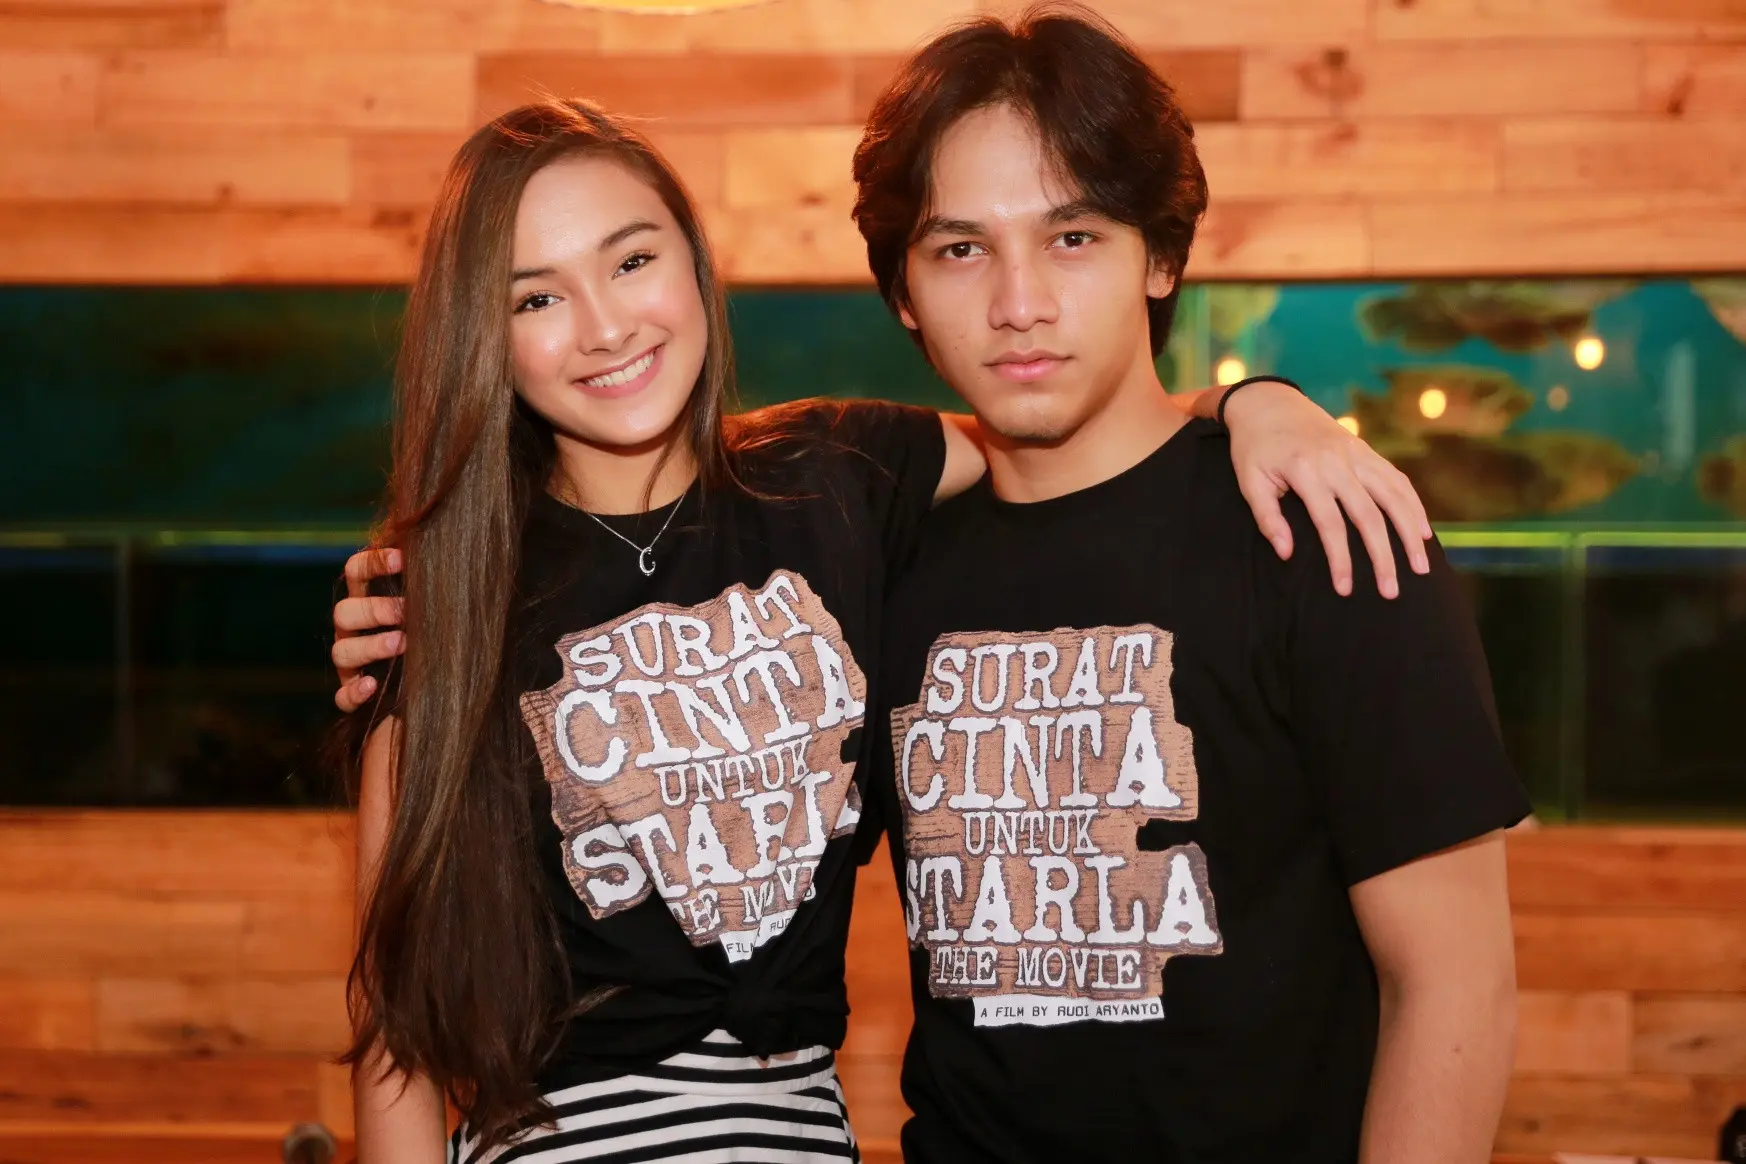 Kesuksesan lagu Surat Cinta Untuk Starla milik Virgoun juga diikuti dalam tayangan web series. Serial sepanjang tujuh episode yang digarap pada awal tahun ini itu juga digarap versi layar lebar. (Adrian Putra/Bintang.com)